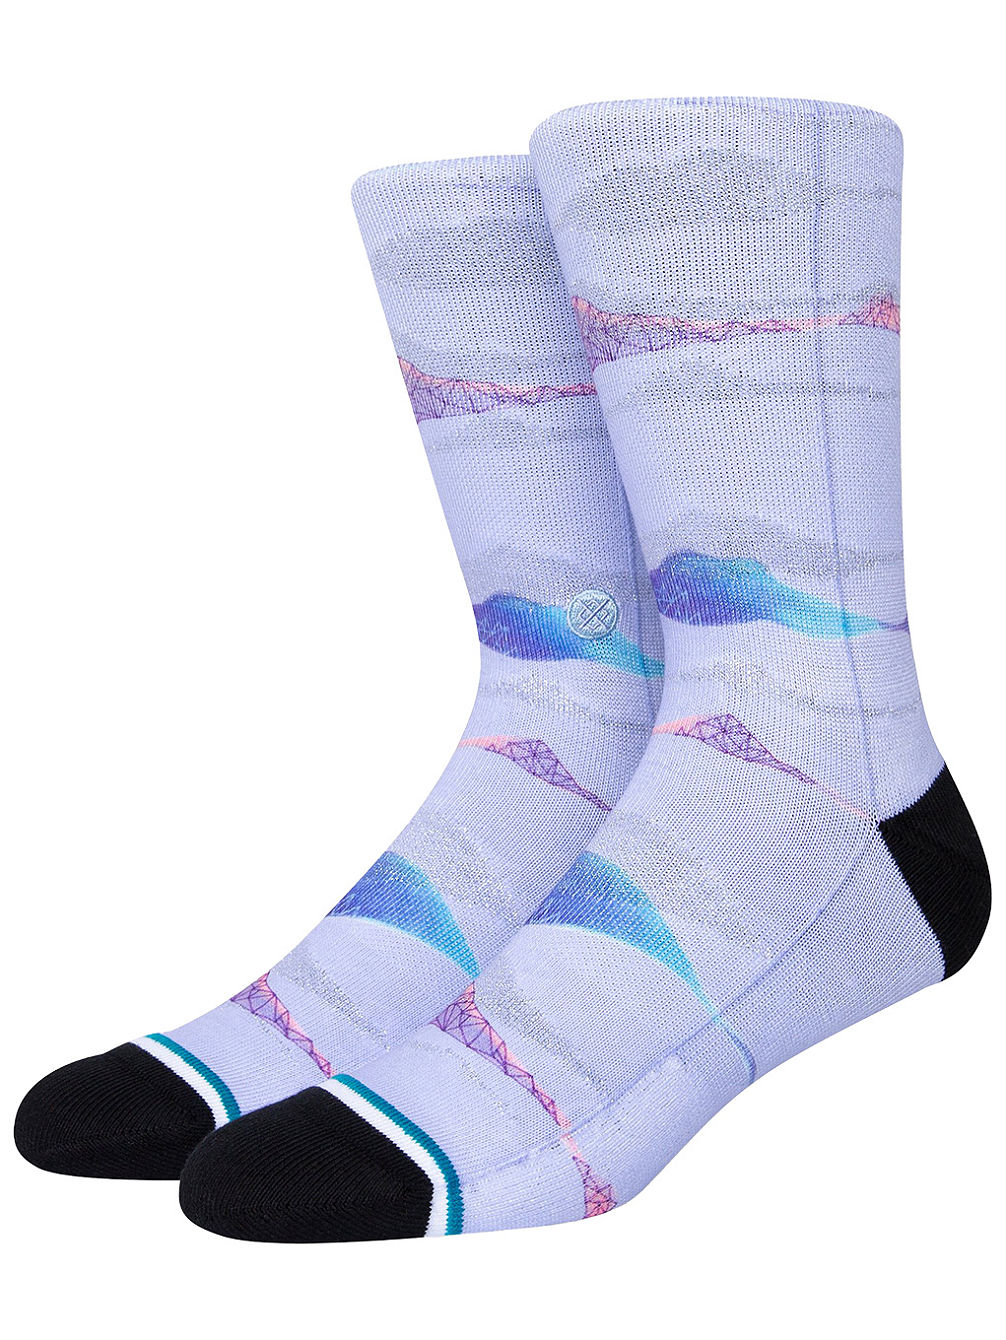 Pembroke Socks